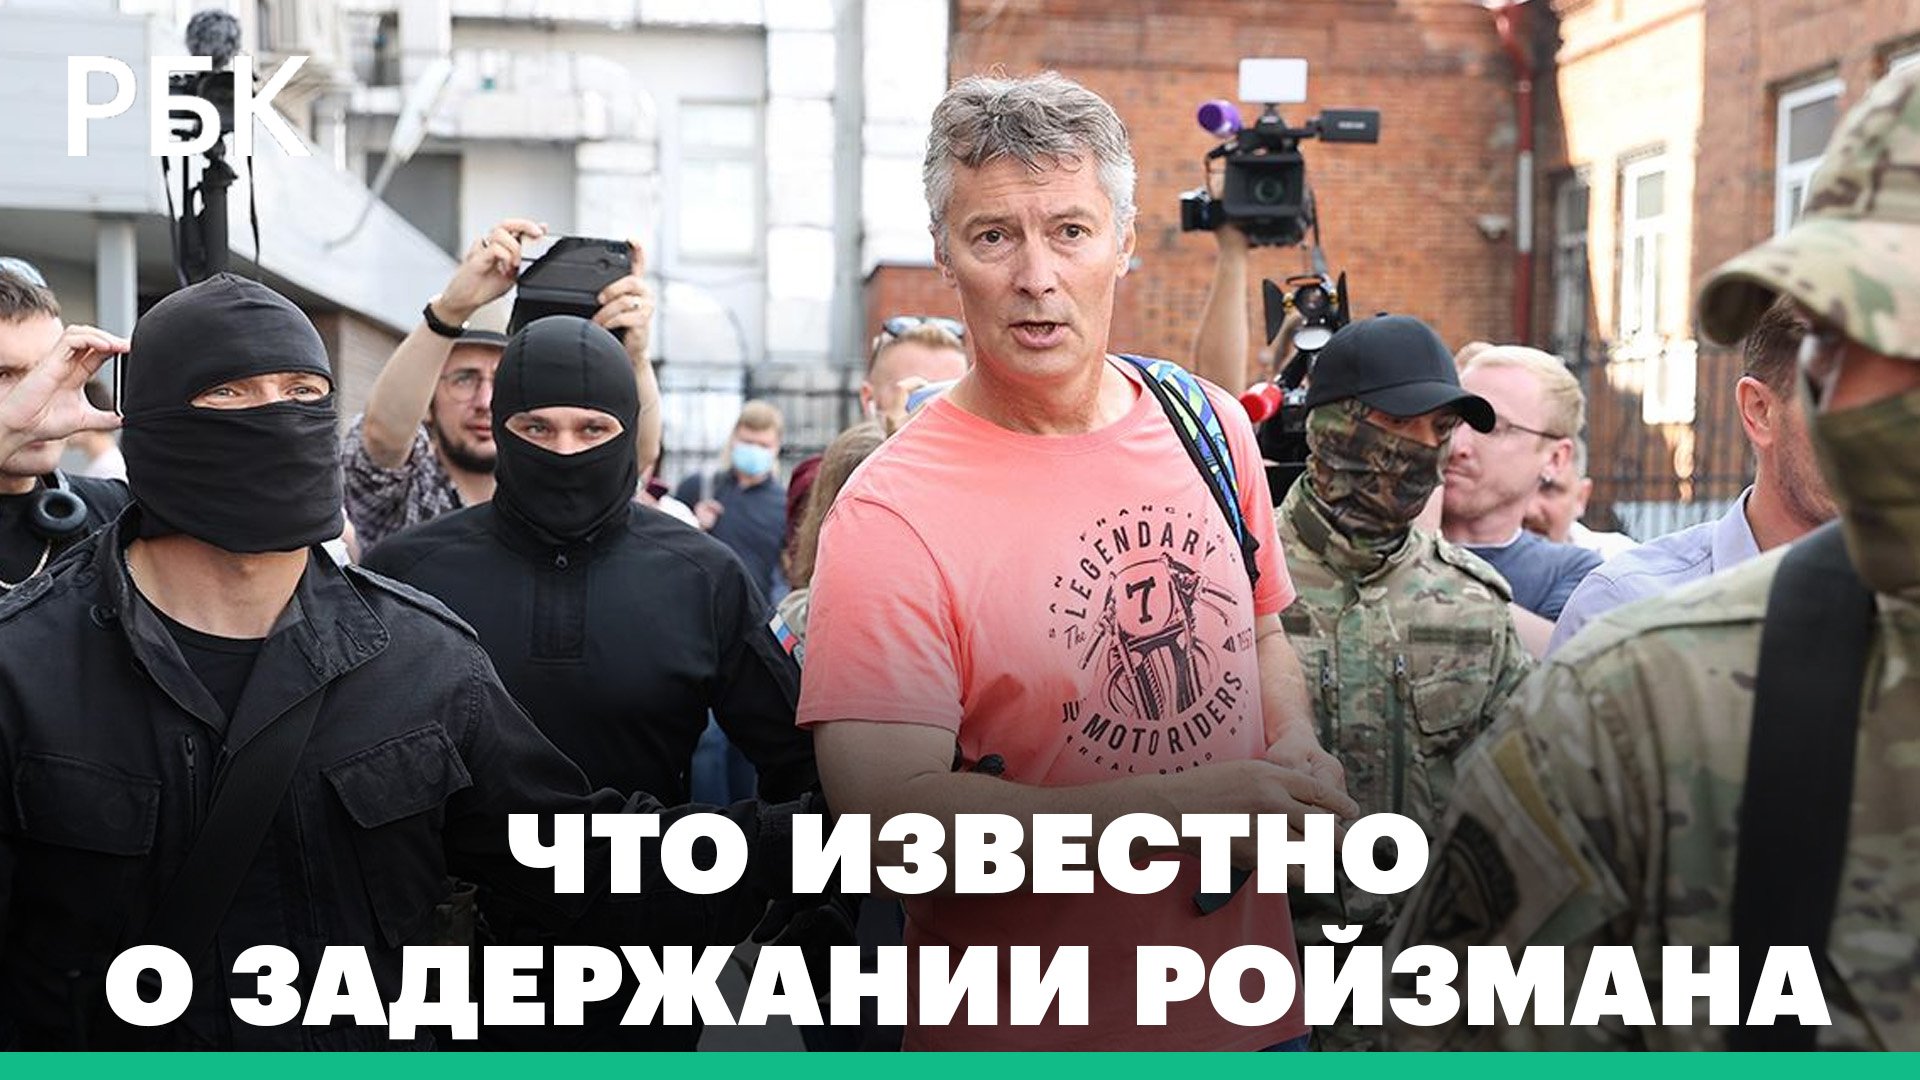 Экс-мэра Екатеринбурга Евгения Ройзмана задержали по делу о дискредитации вооруженных сил России